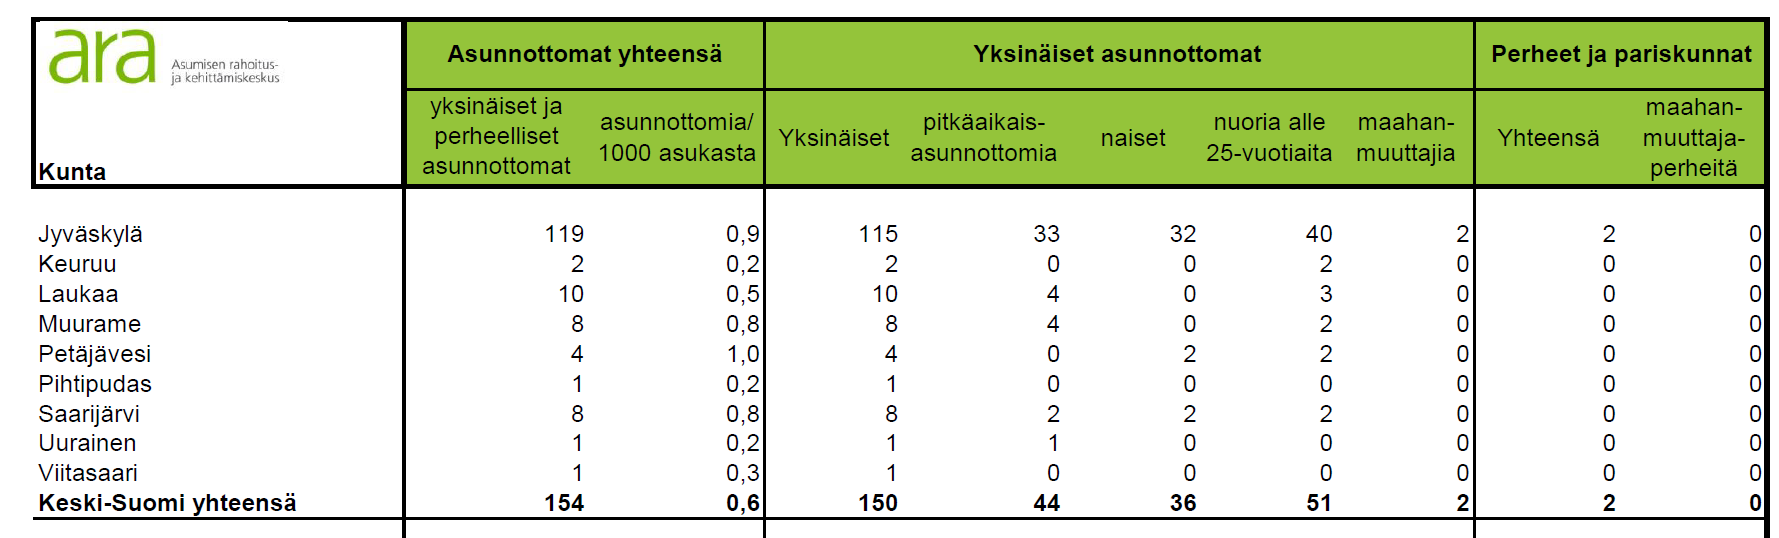 Asunnottomuus Taulukko 5. Asunnottomat Keski-Suomessa vuonna 2015 (Lähde: ARA: Asunnottomat 2015 (Selvitys 1/2016), Liite 1. Asunnottomuus kunnissa 2015) Taulukko 6.